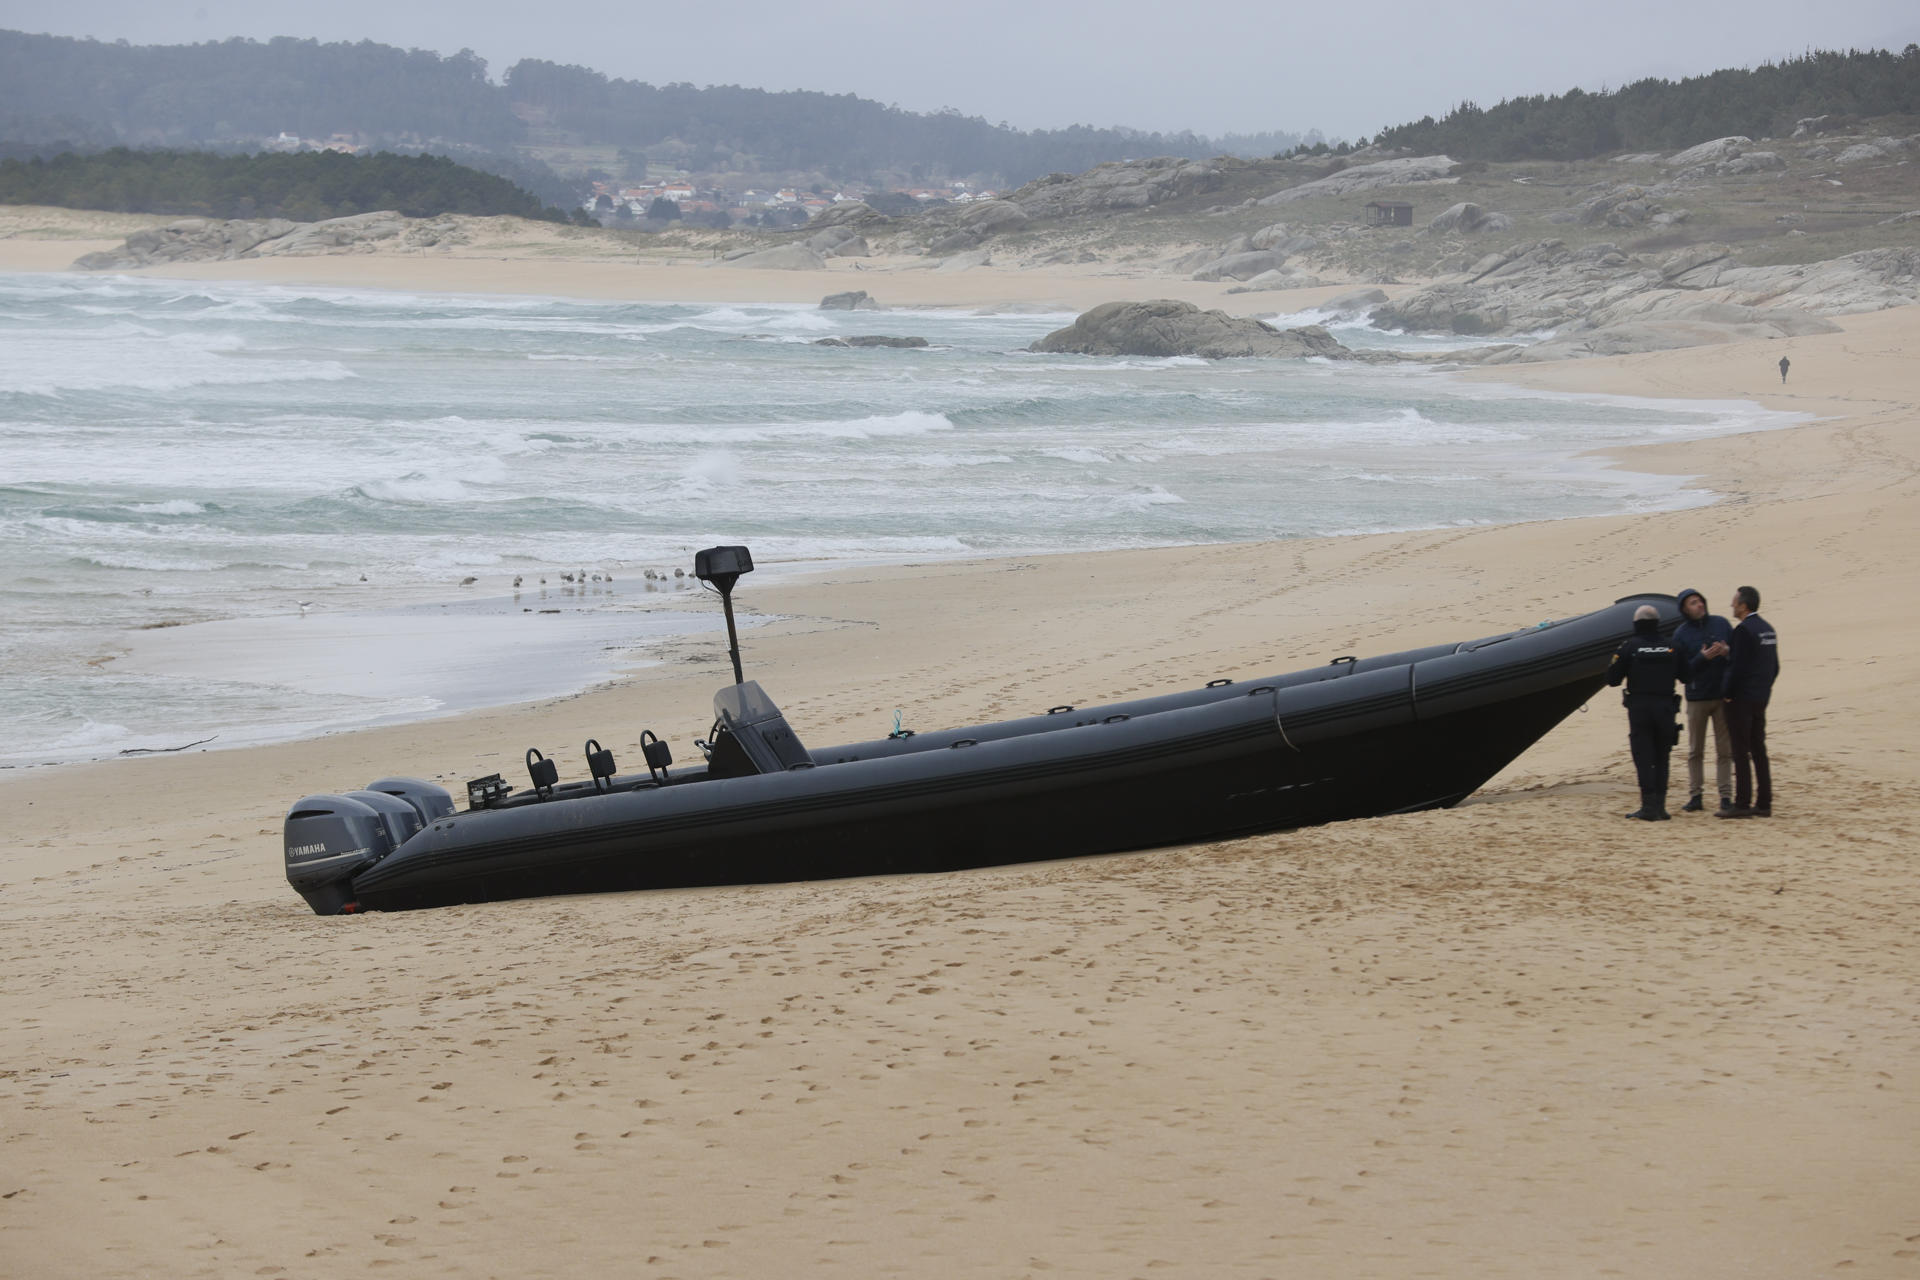 Una de las lanchas que han encontrado esta mañana en las playas de A Coruña. A primera hora de la mañana de este miércoles se detectaron dos embarcaciones similares varadas en playas de la costa de Ribeira.EFE/ Lavandeira